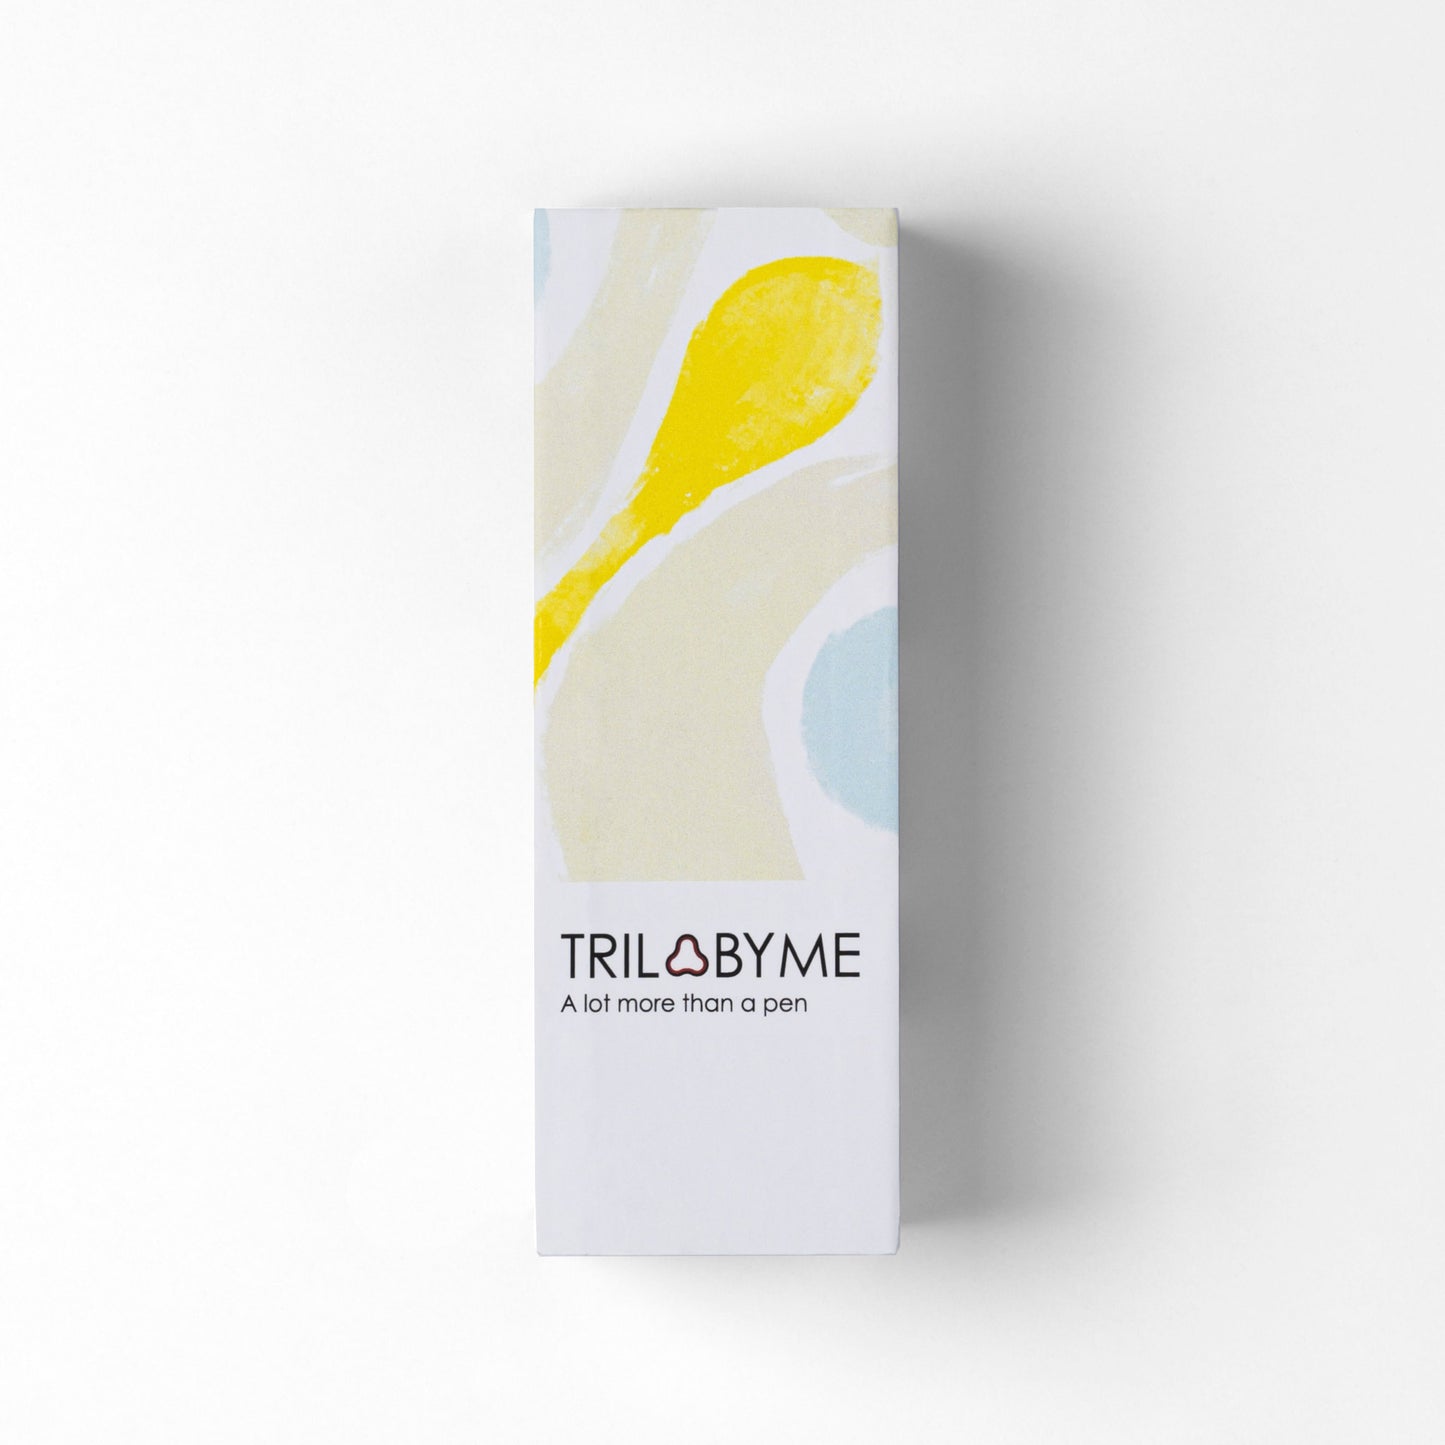 TRILObyME Soft - Astuccio atelier portatile a forma trilobata